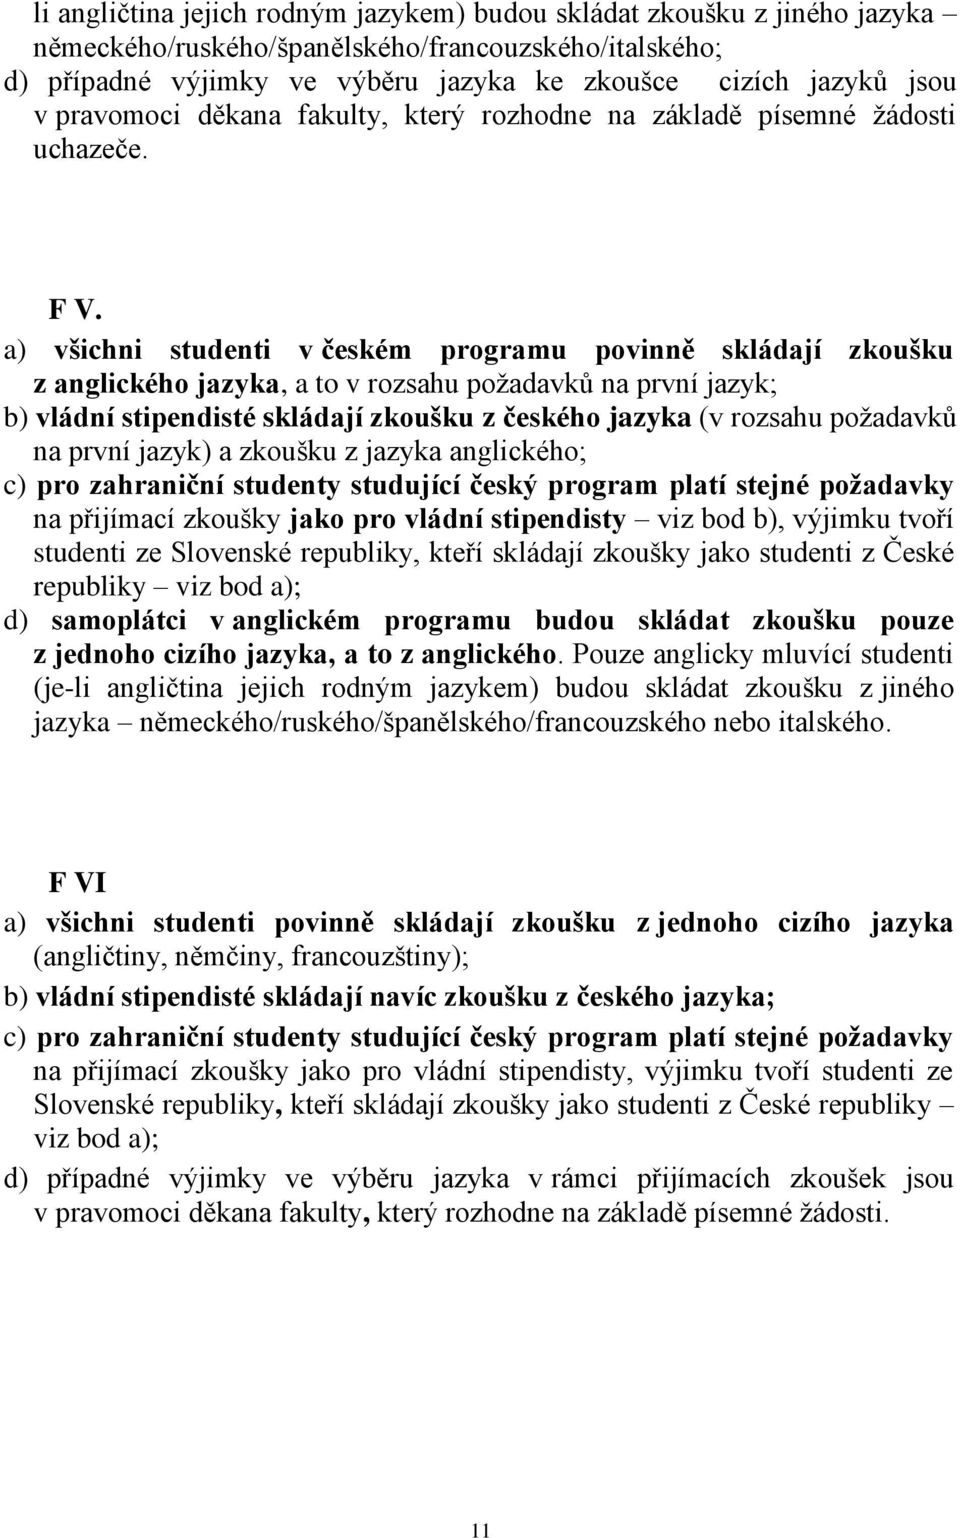 a) všichni studenti v českém programu povinně skládají zkoušku z anglického jazyka, a to v rozsahu poţadavků na první jazyk; b) vládní stipendisté skládají zkoušku z českého jazyka (v rozsahu